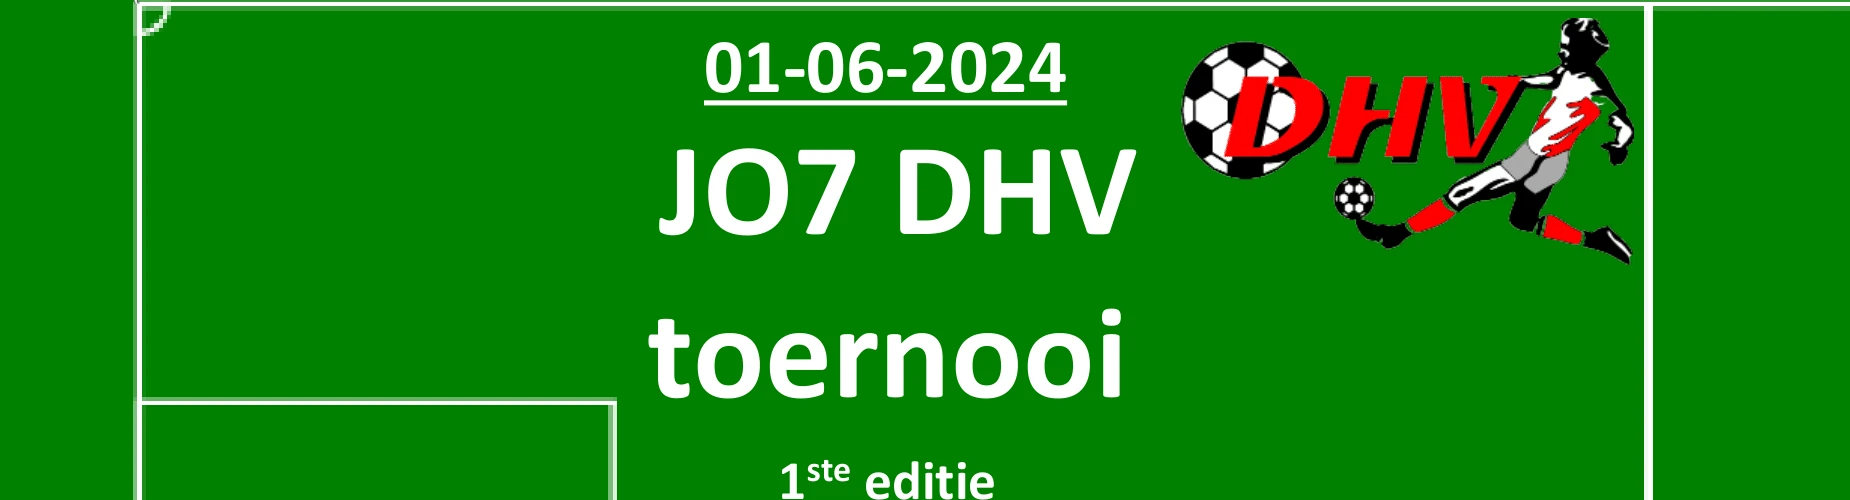 Banner - JO7 toernooi DHV - vv DHV - Zevenbergschen Hoek